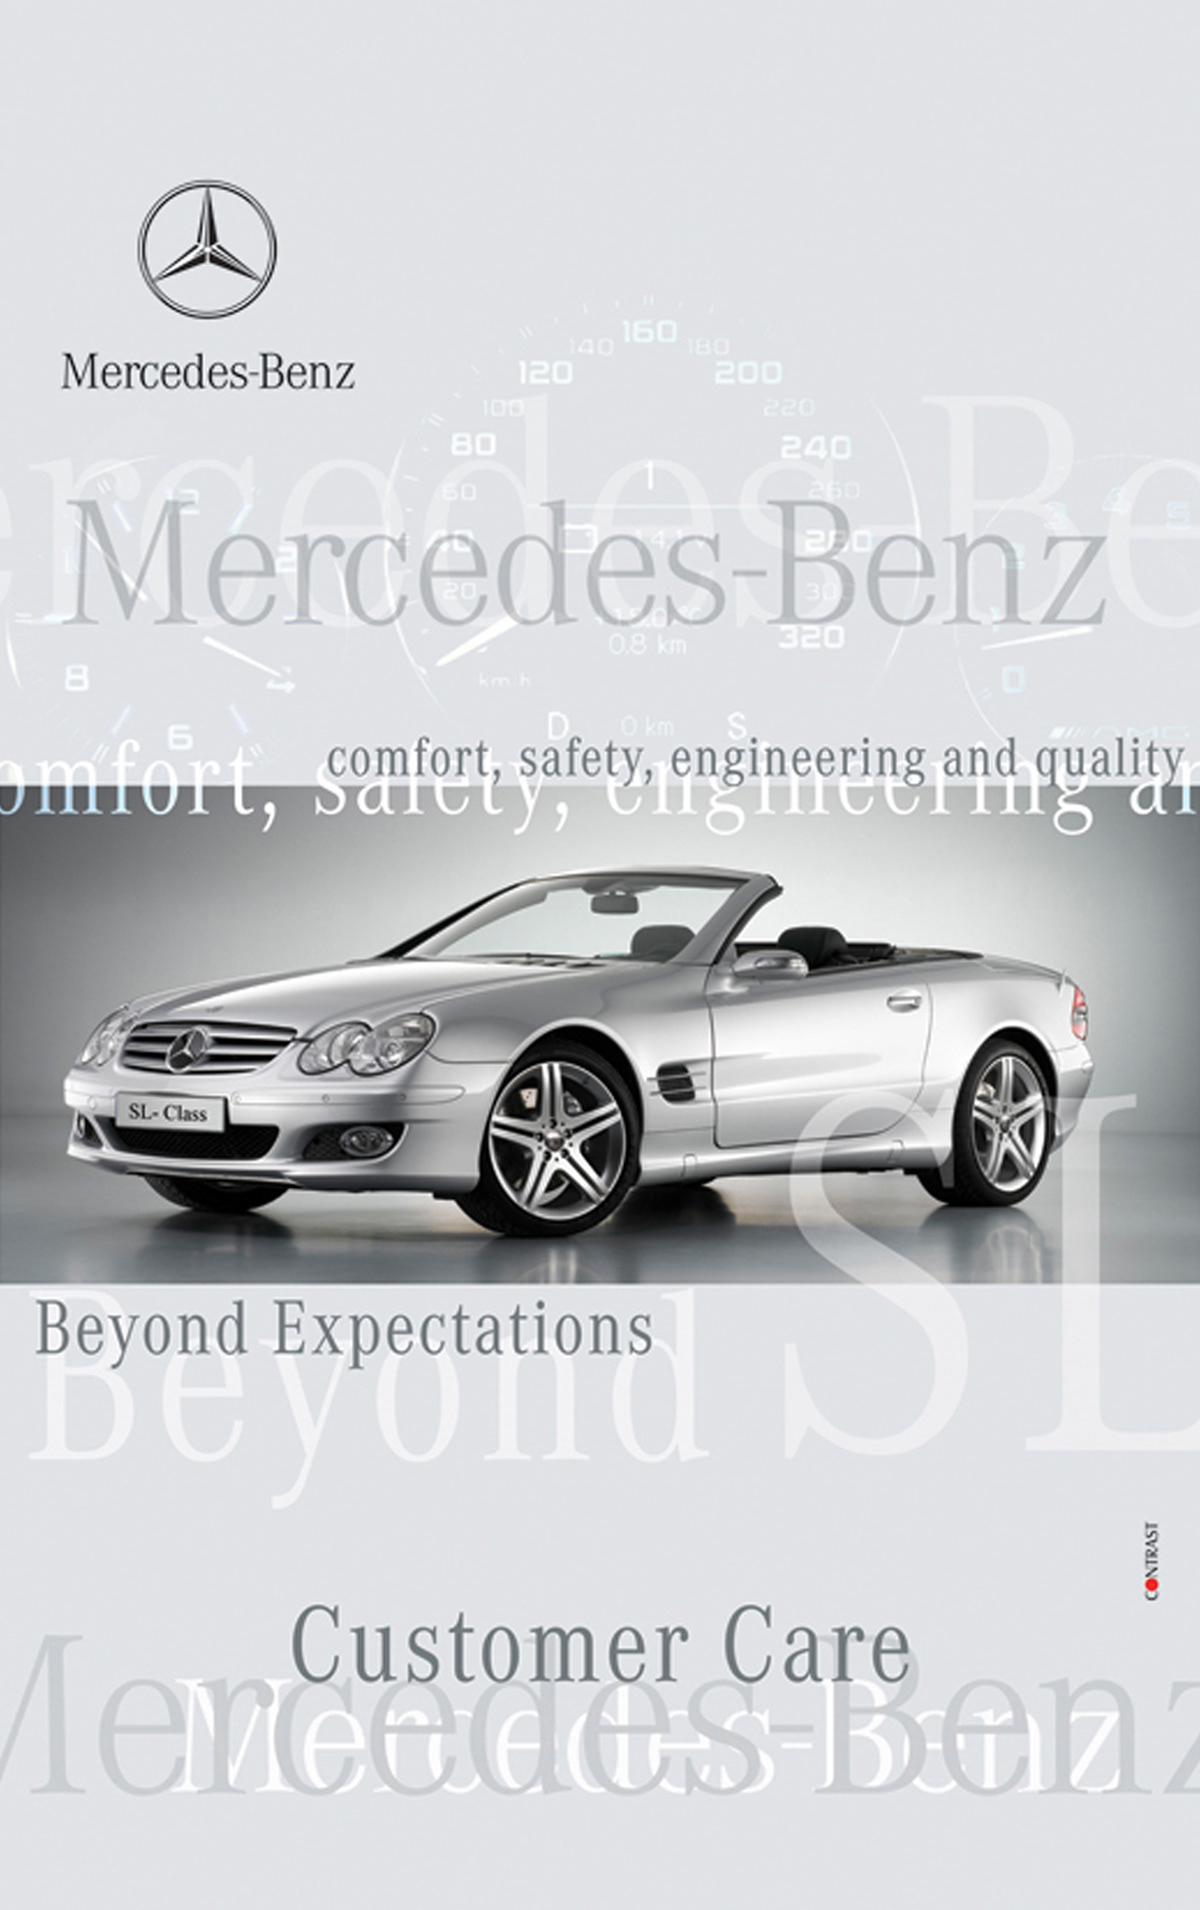 mercedes-benz a-class B-Class c-class E-Class S-Class outdoor ads POP & In-Store press